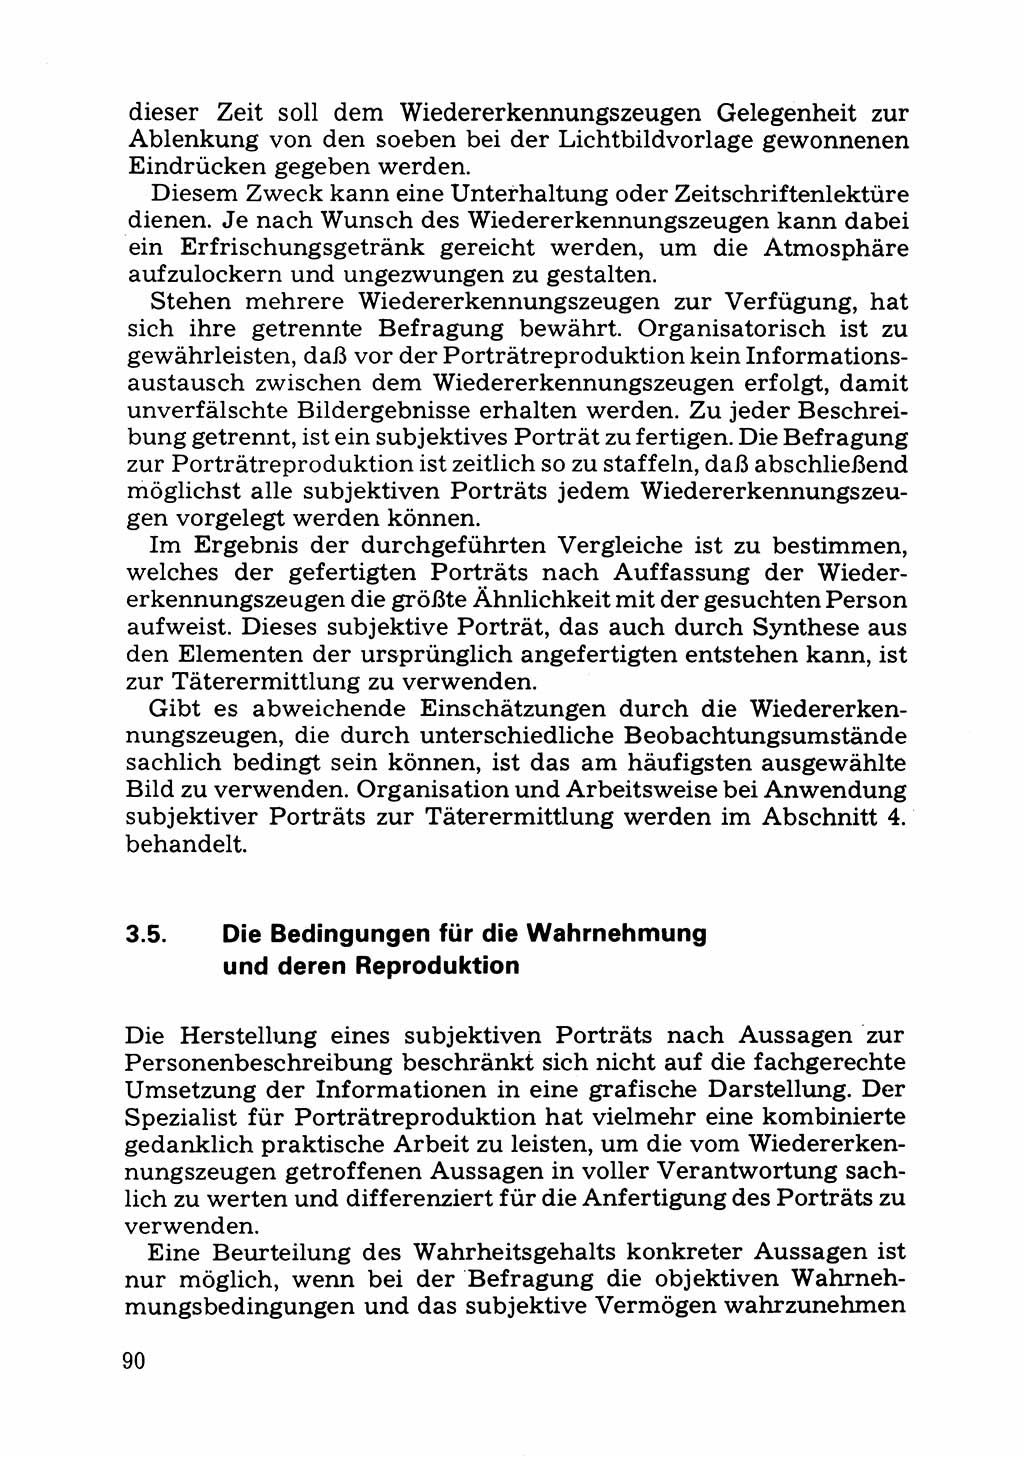 Das subjektive Porträt [Deutsche Demokratische Republik (DDR)] 1981, Seite 90 (Subj. Port. DDR 1981, S. 90)